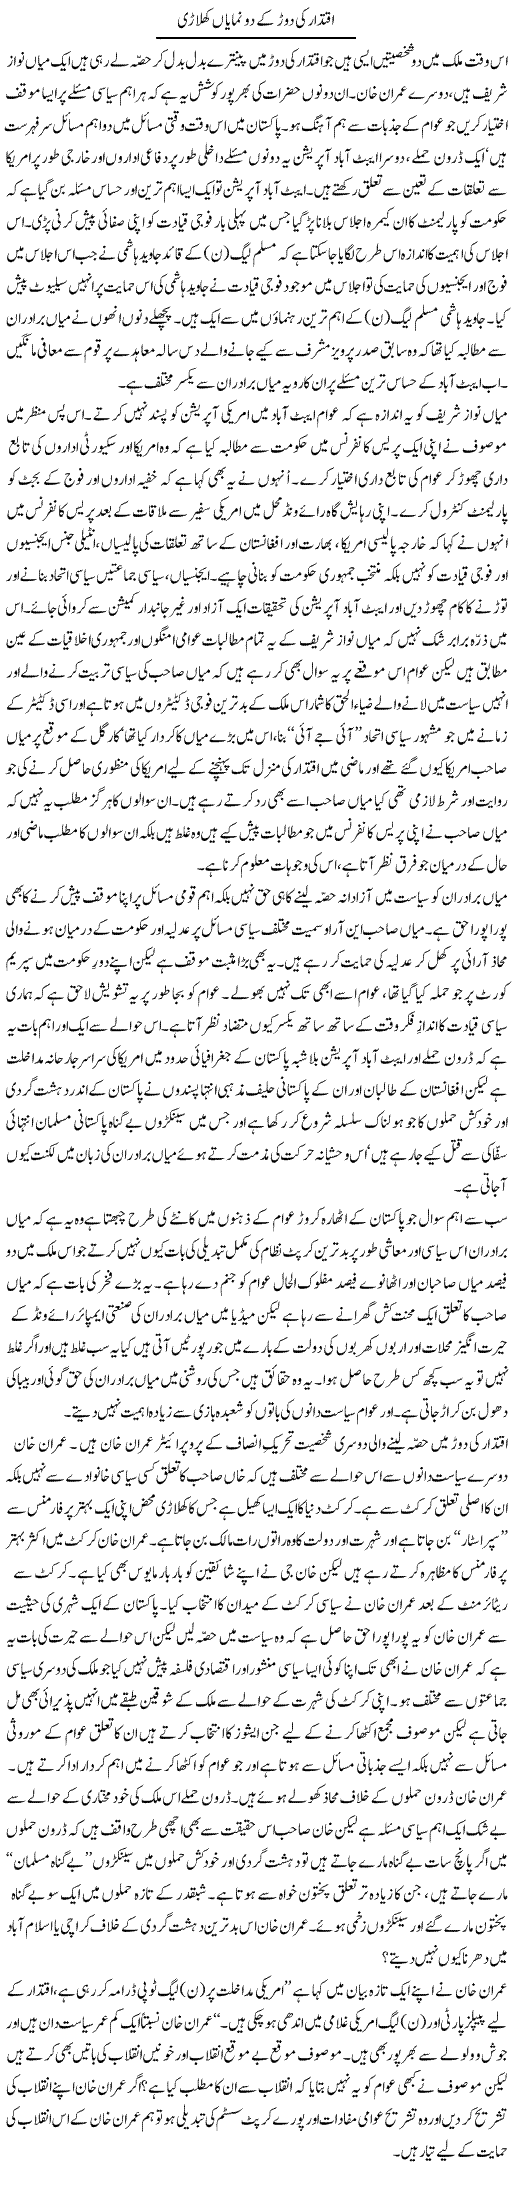 Nawaz and Imran Express Column Zaheer Akhtar 21 May 2011